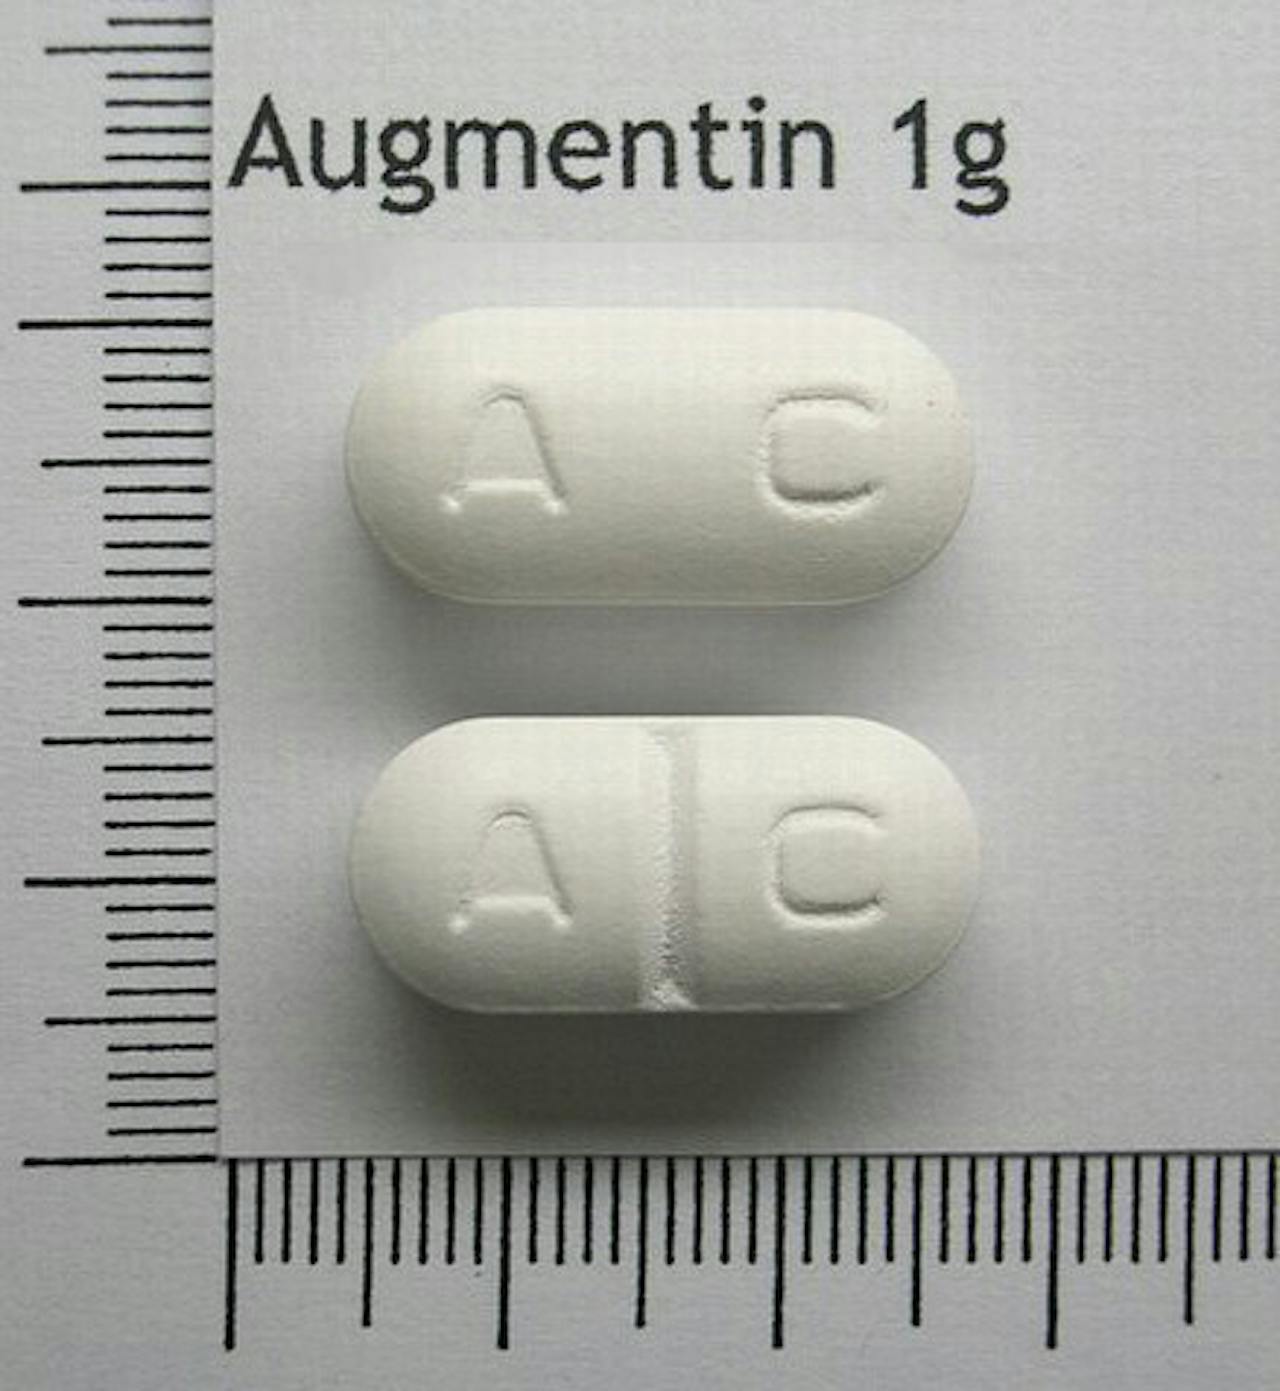 Twee pillen met het woord augmentin erop.